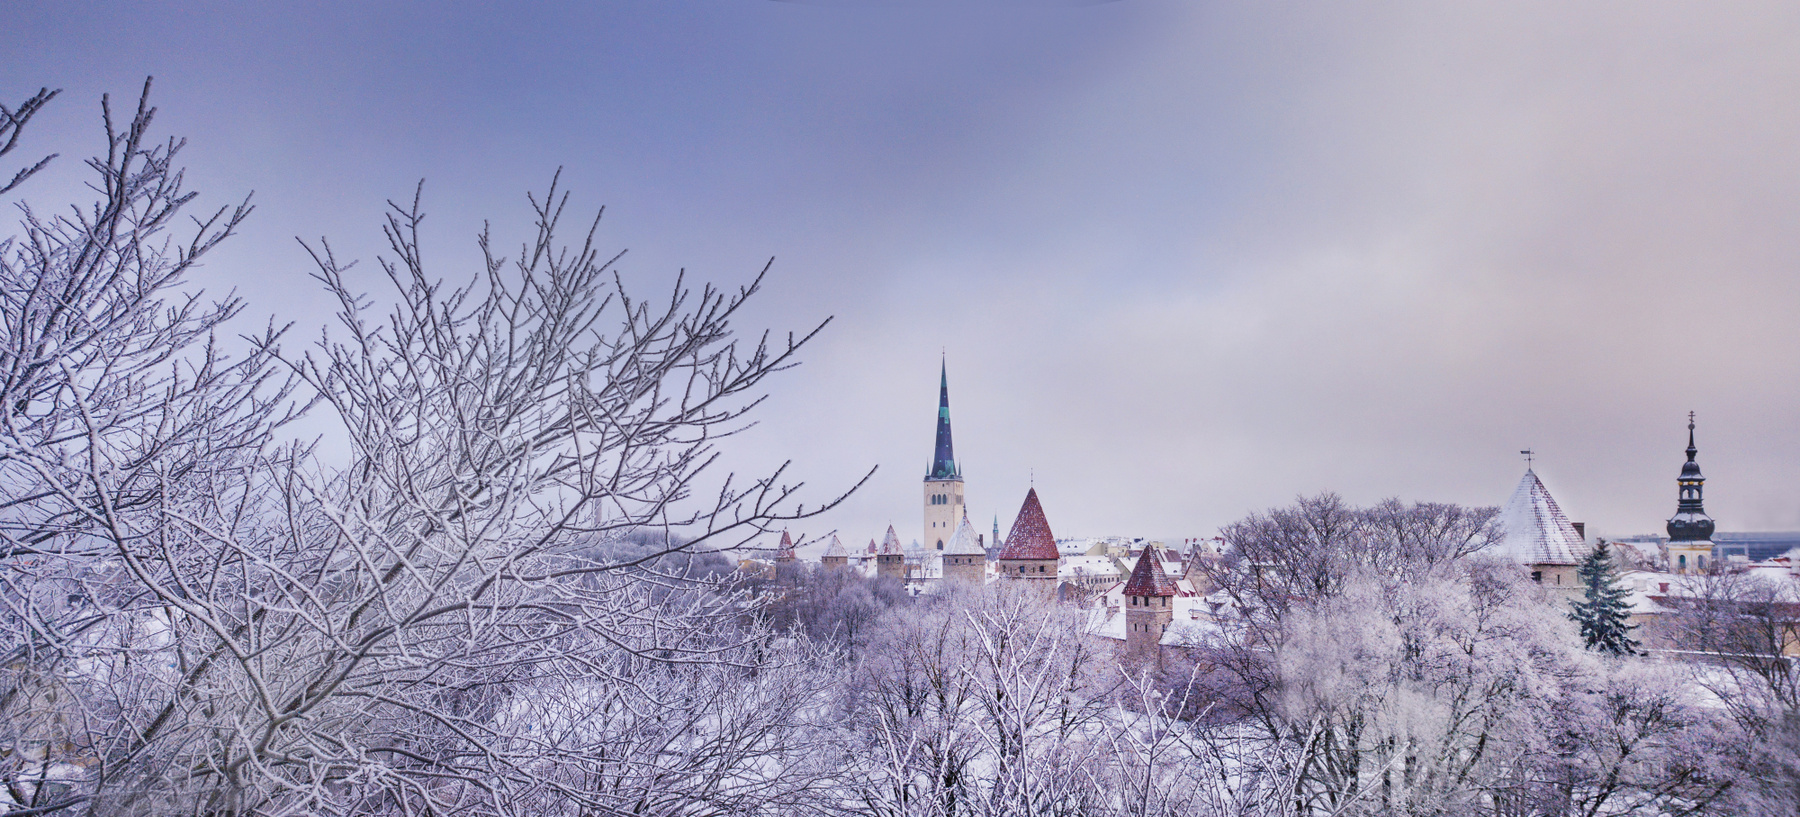 Зимняя сказка в Таллинне. 